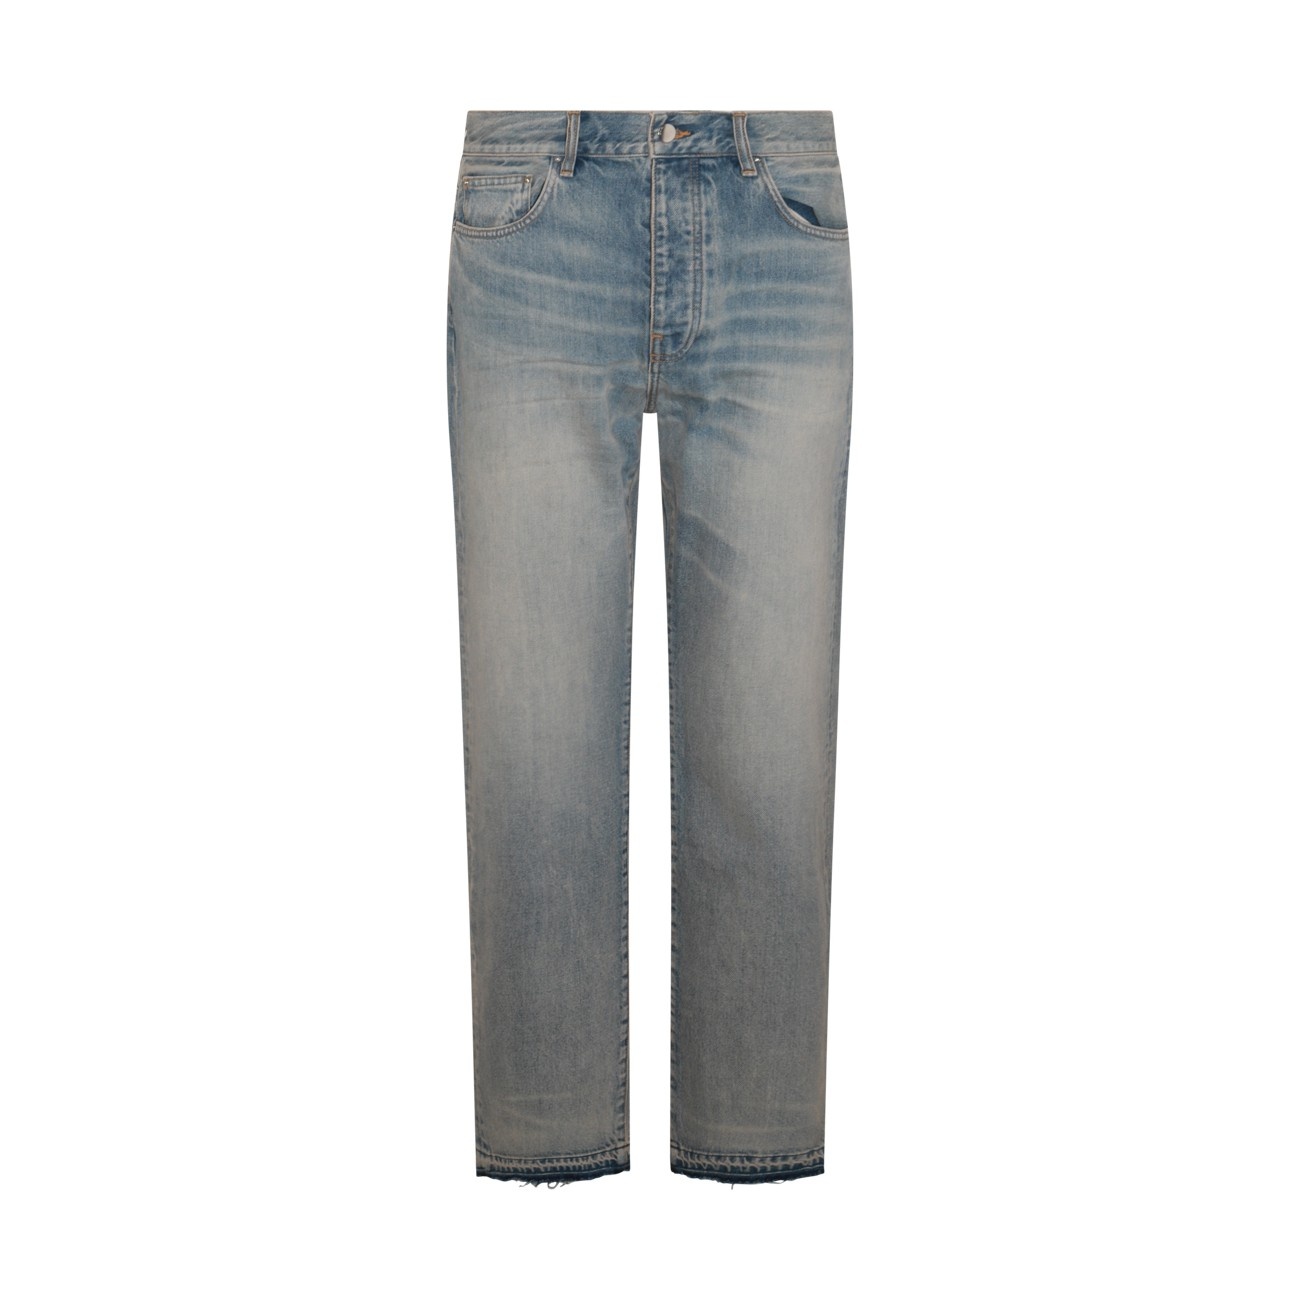 indigo blue cotton denim jeans - 1